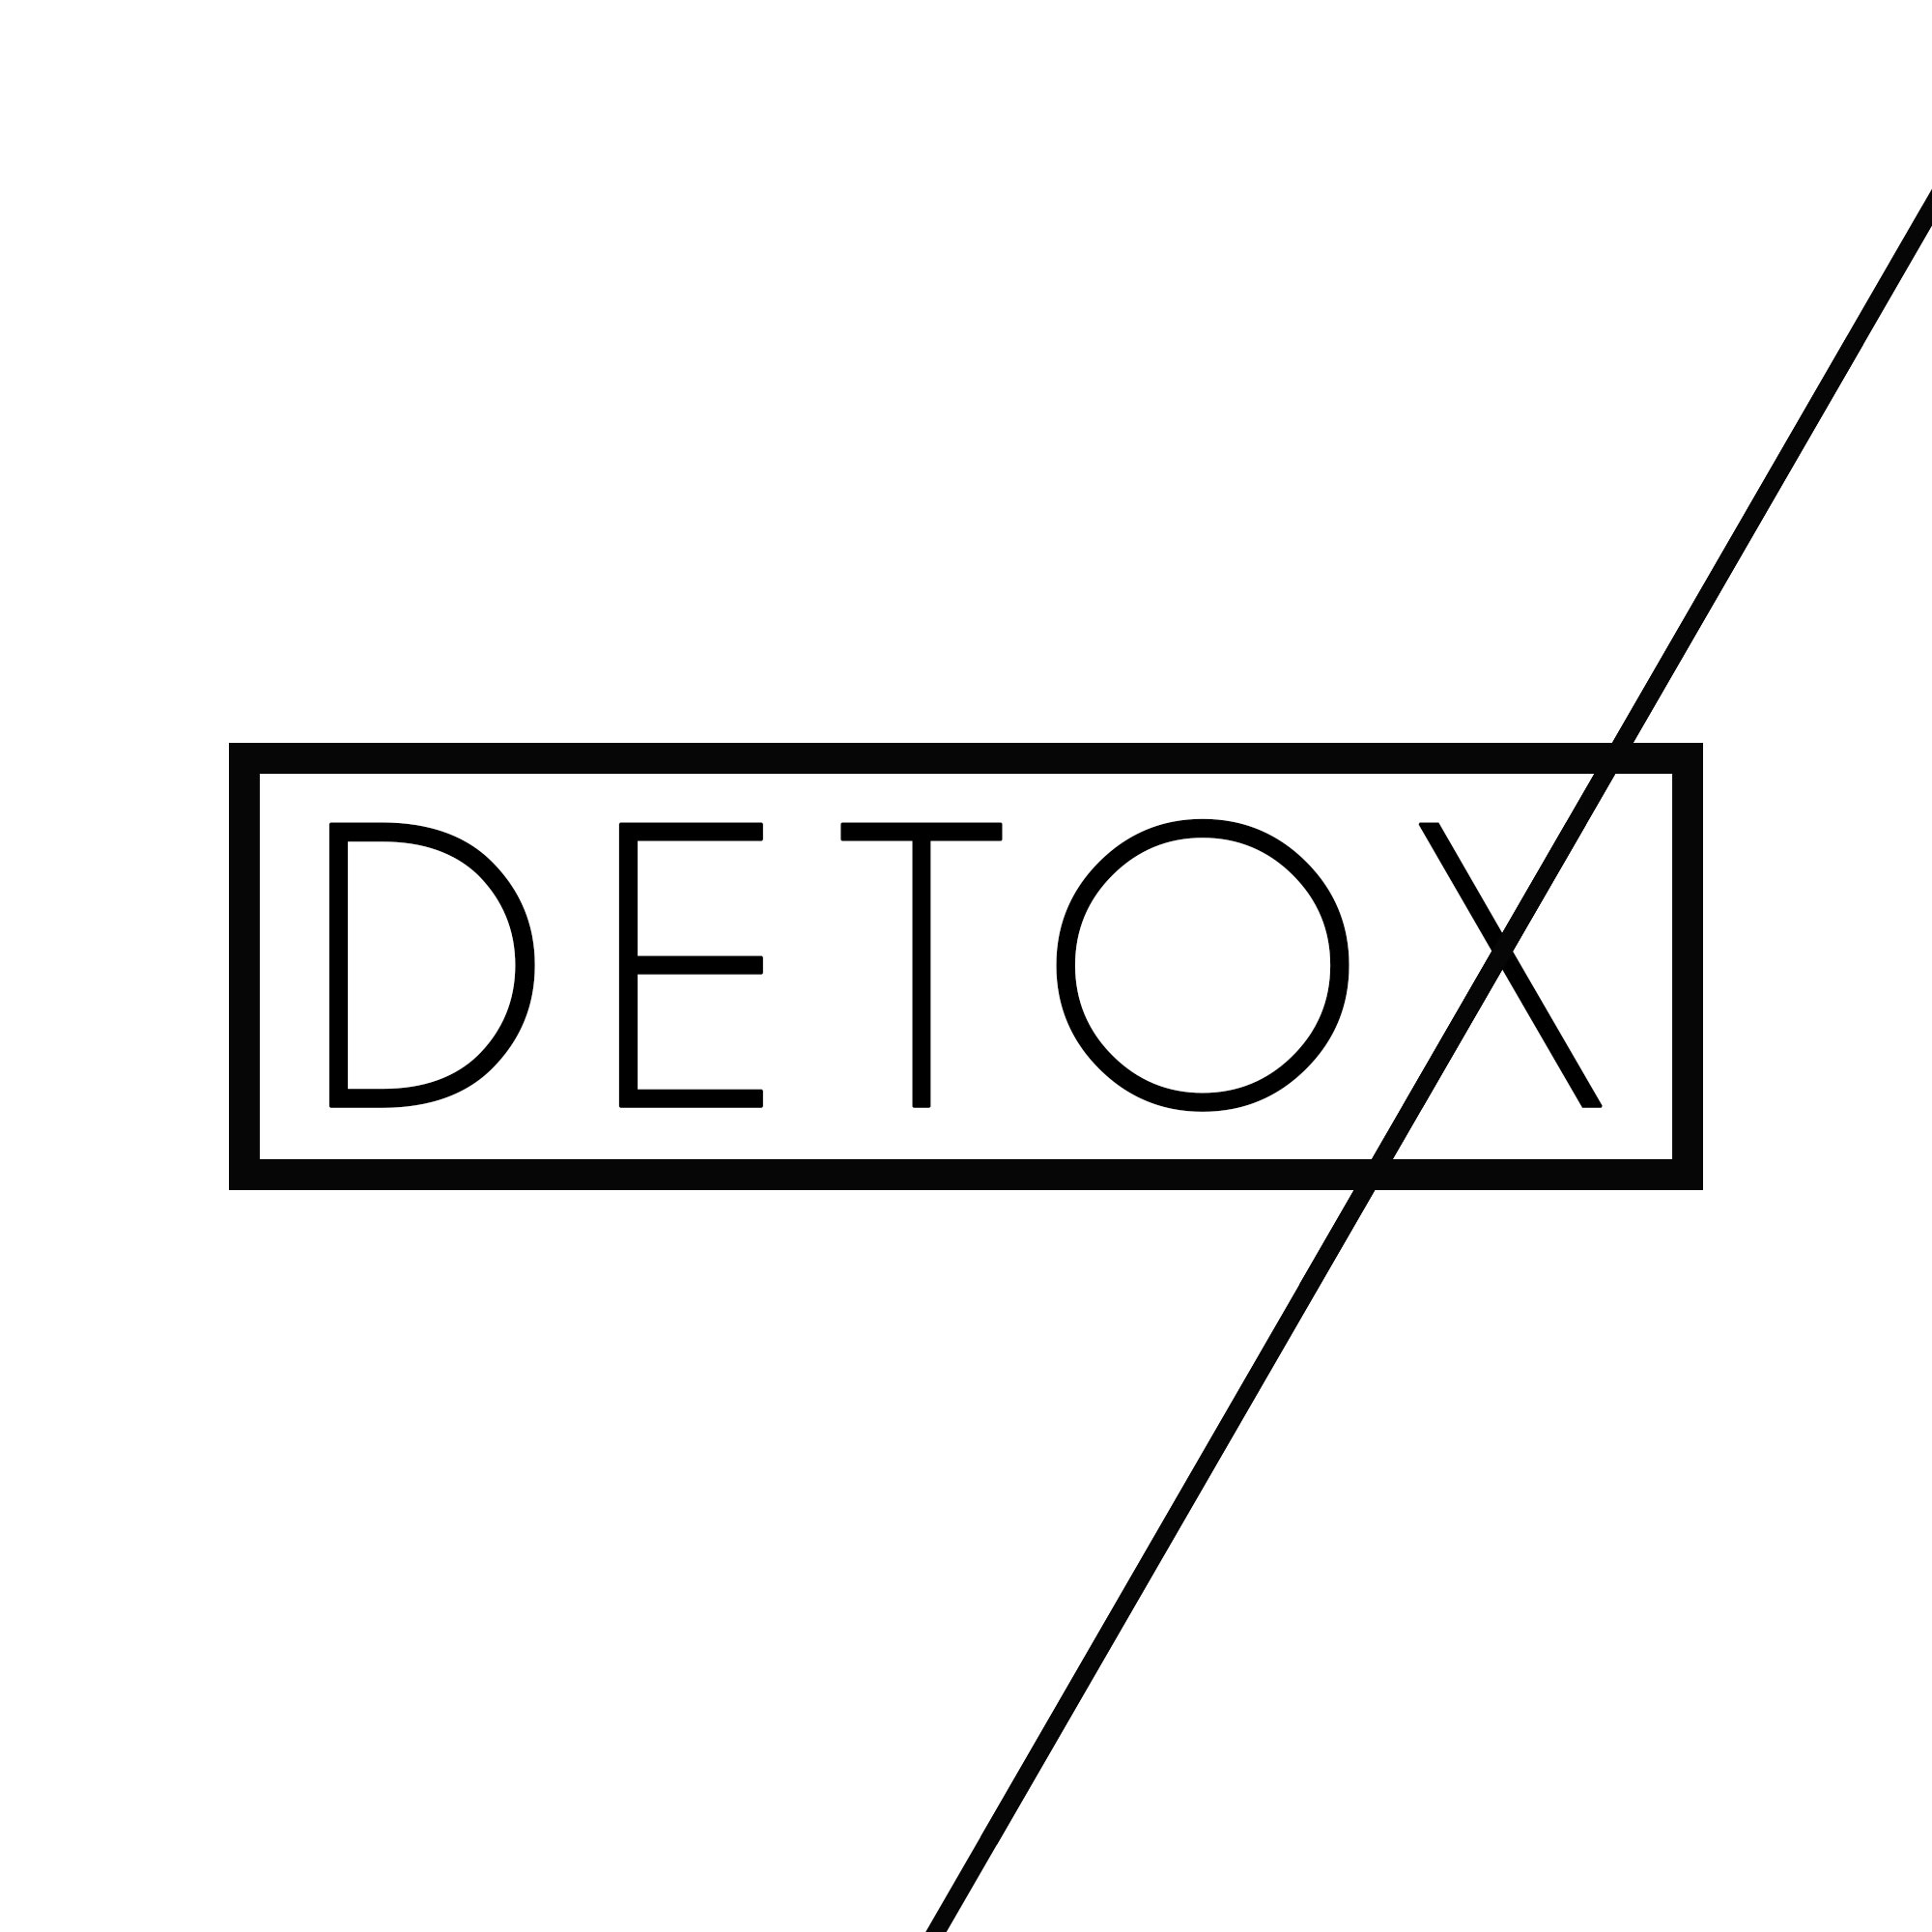 Detox (Pt.6) - The Christian Avatar